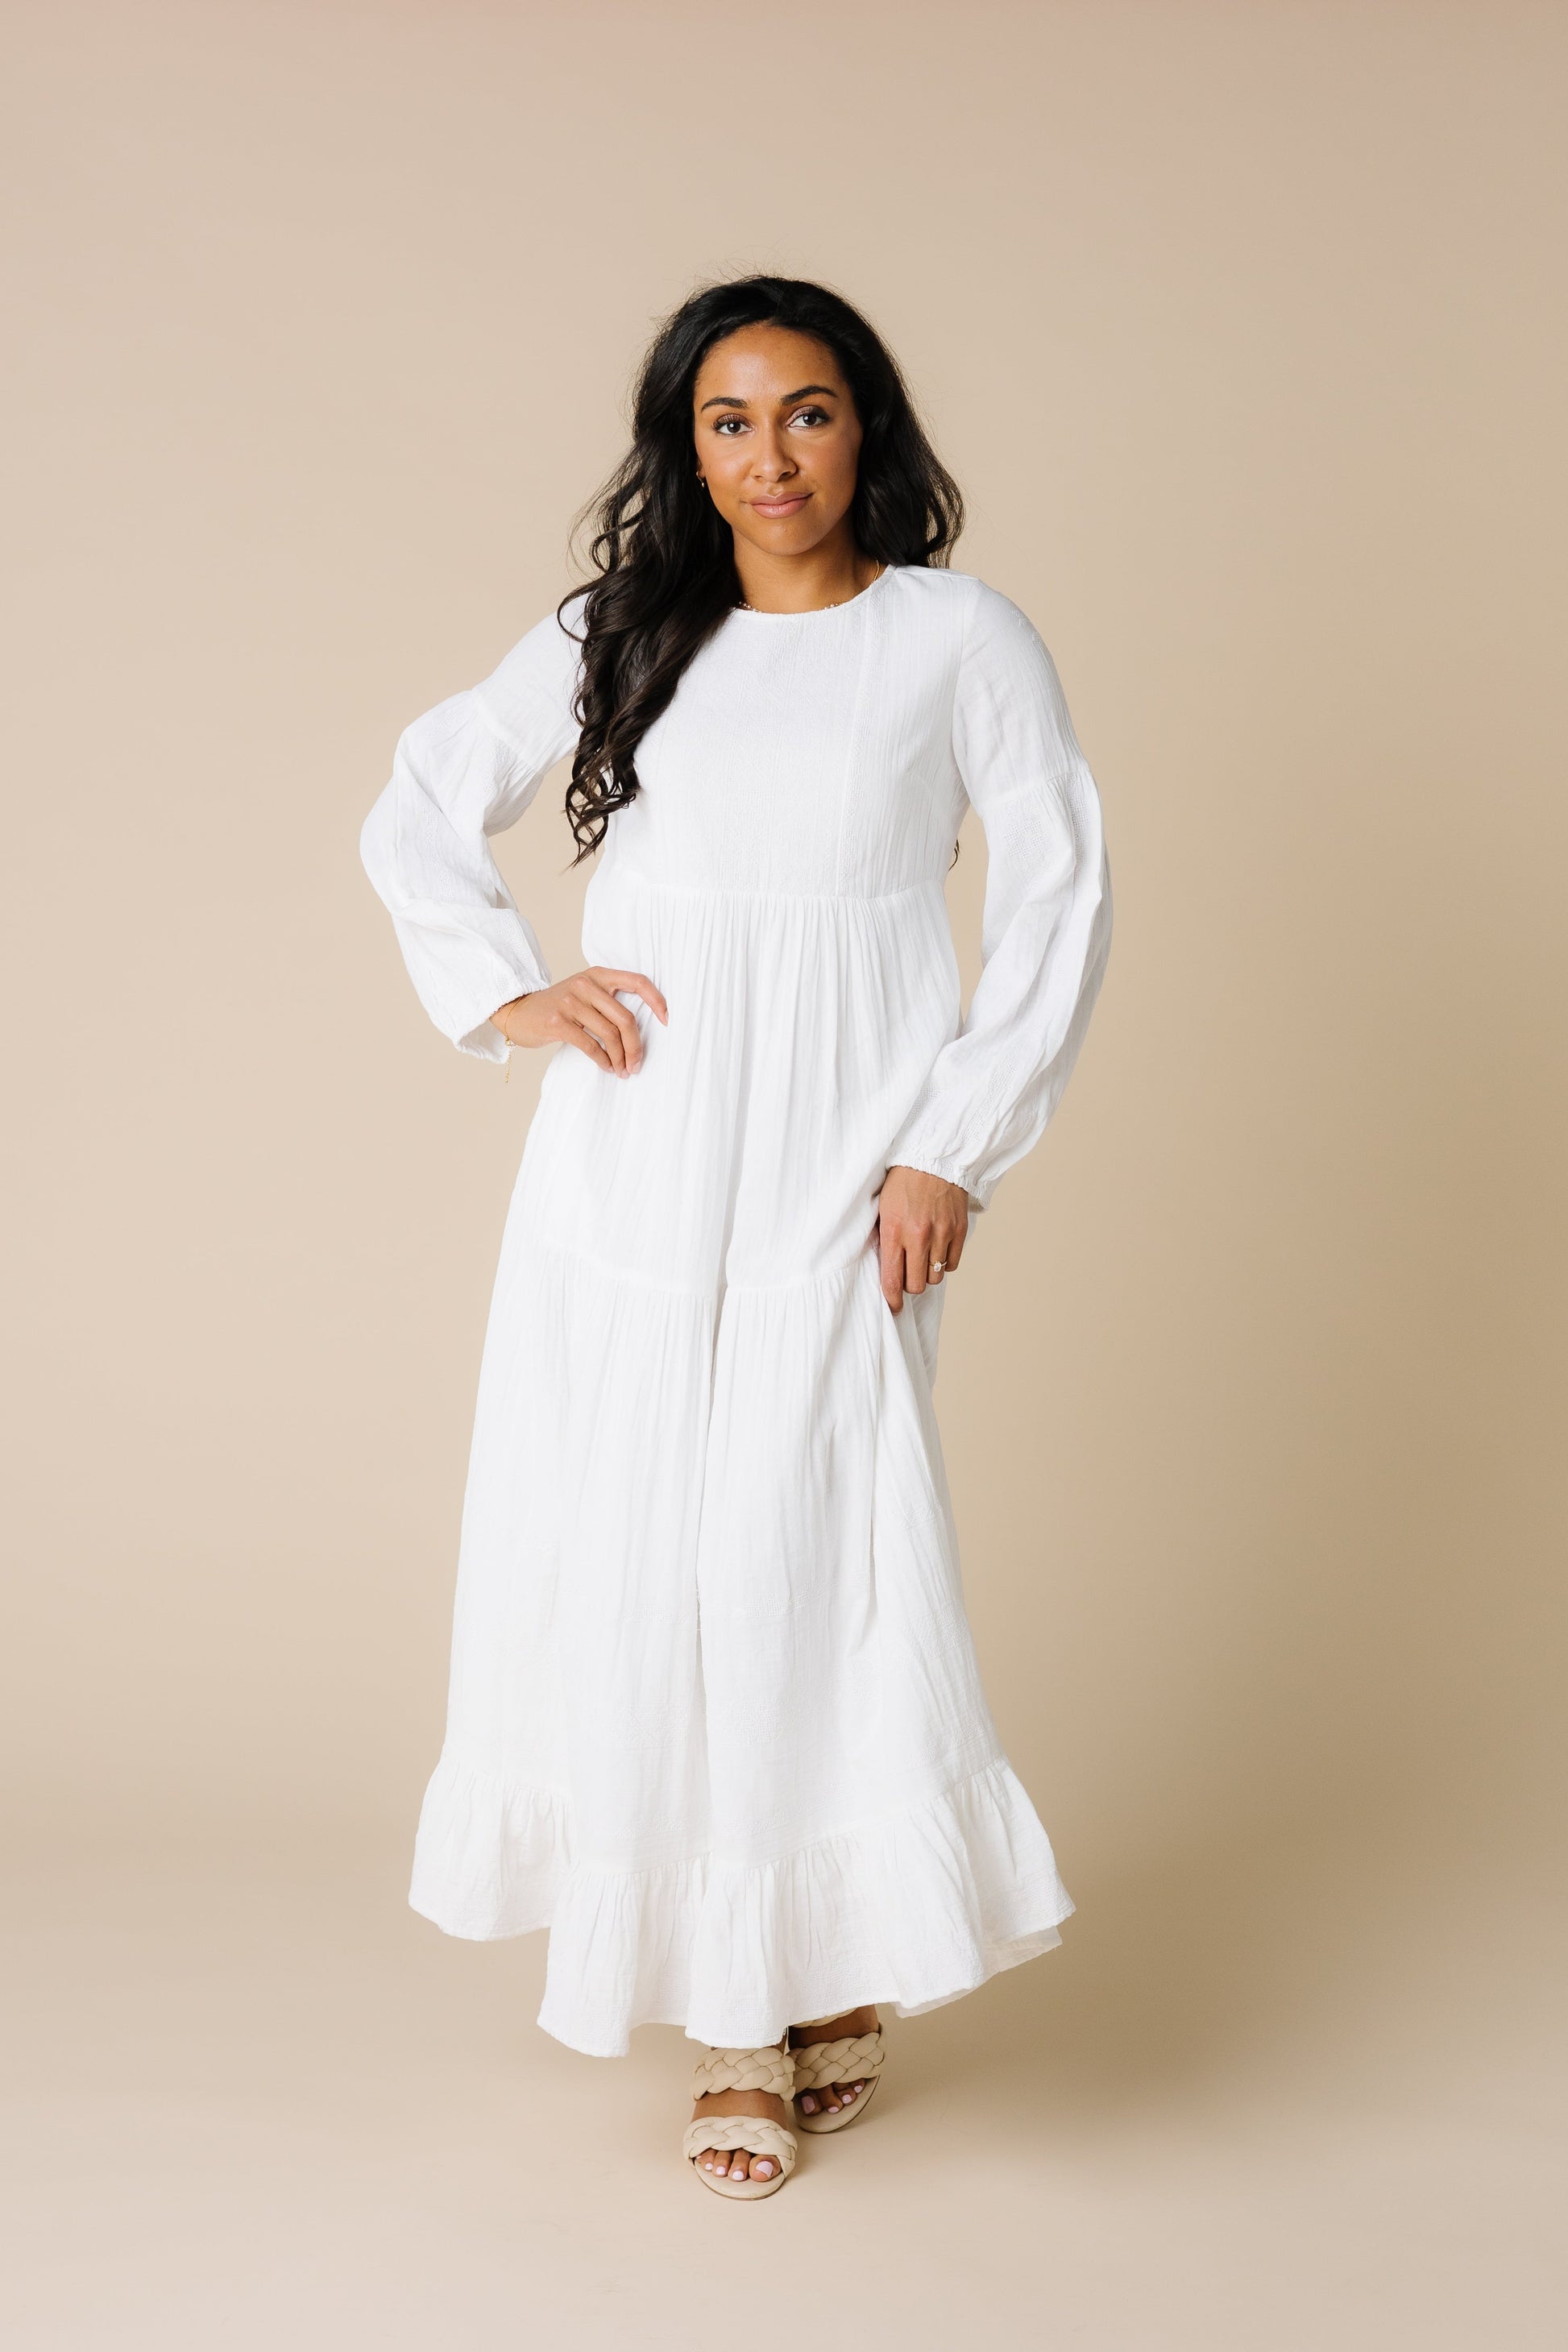 Citrus Miranda Embroidered White Dress WOMEN'S DRESS Cove White XS 